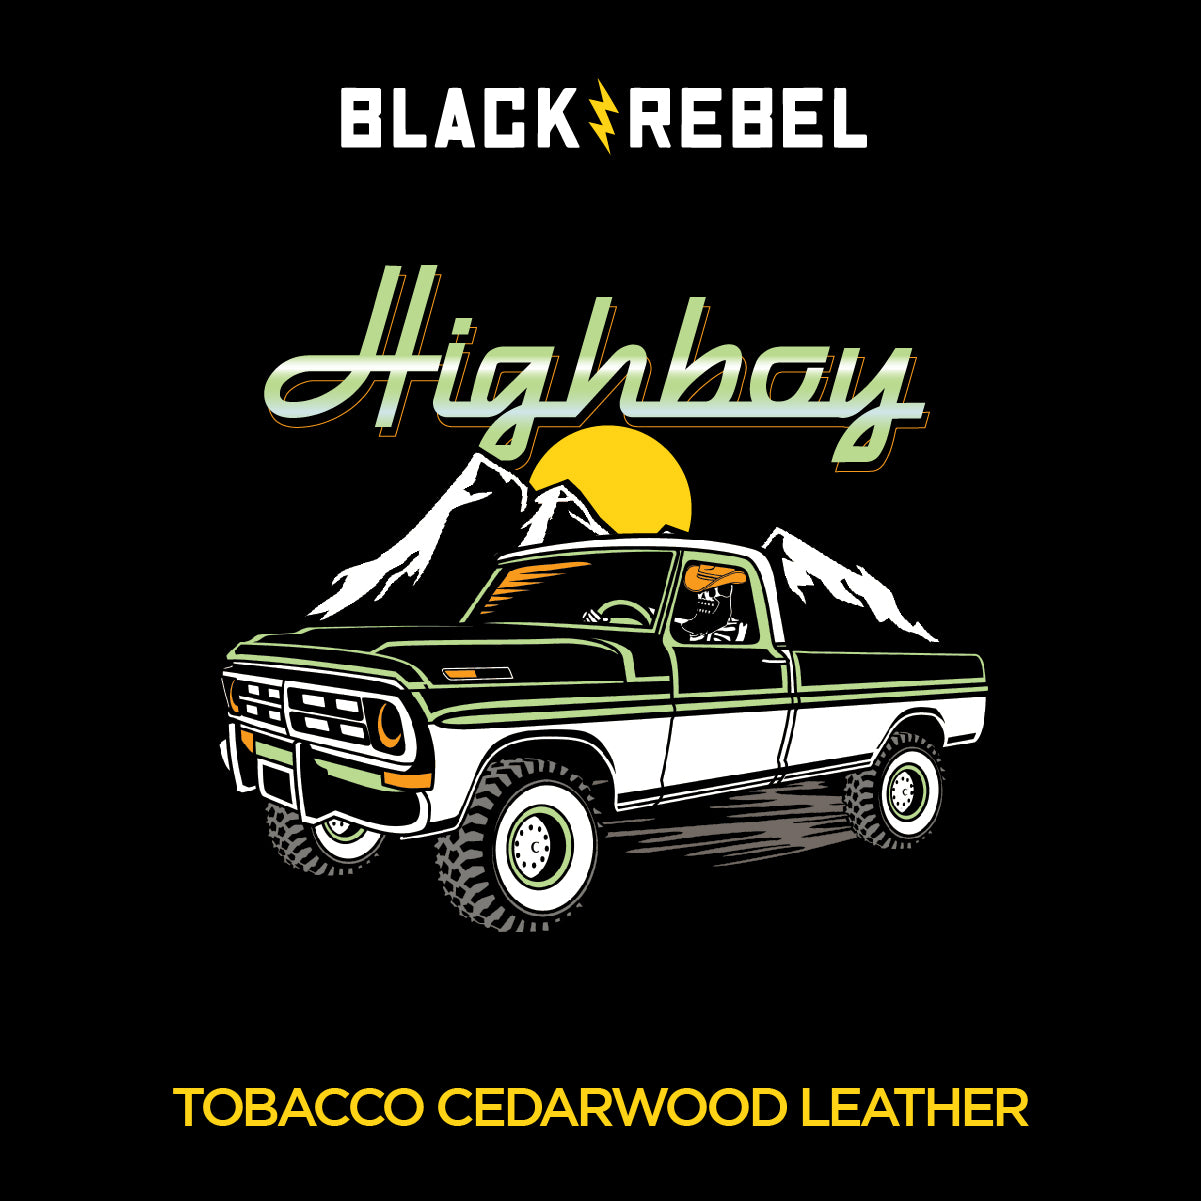 THE HIGHBOY (tobacco cedarwood leather)